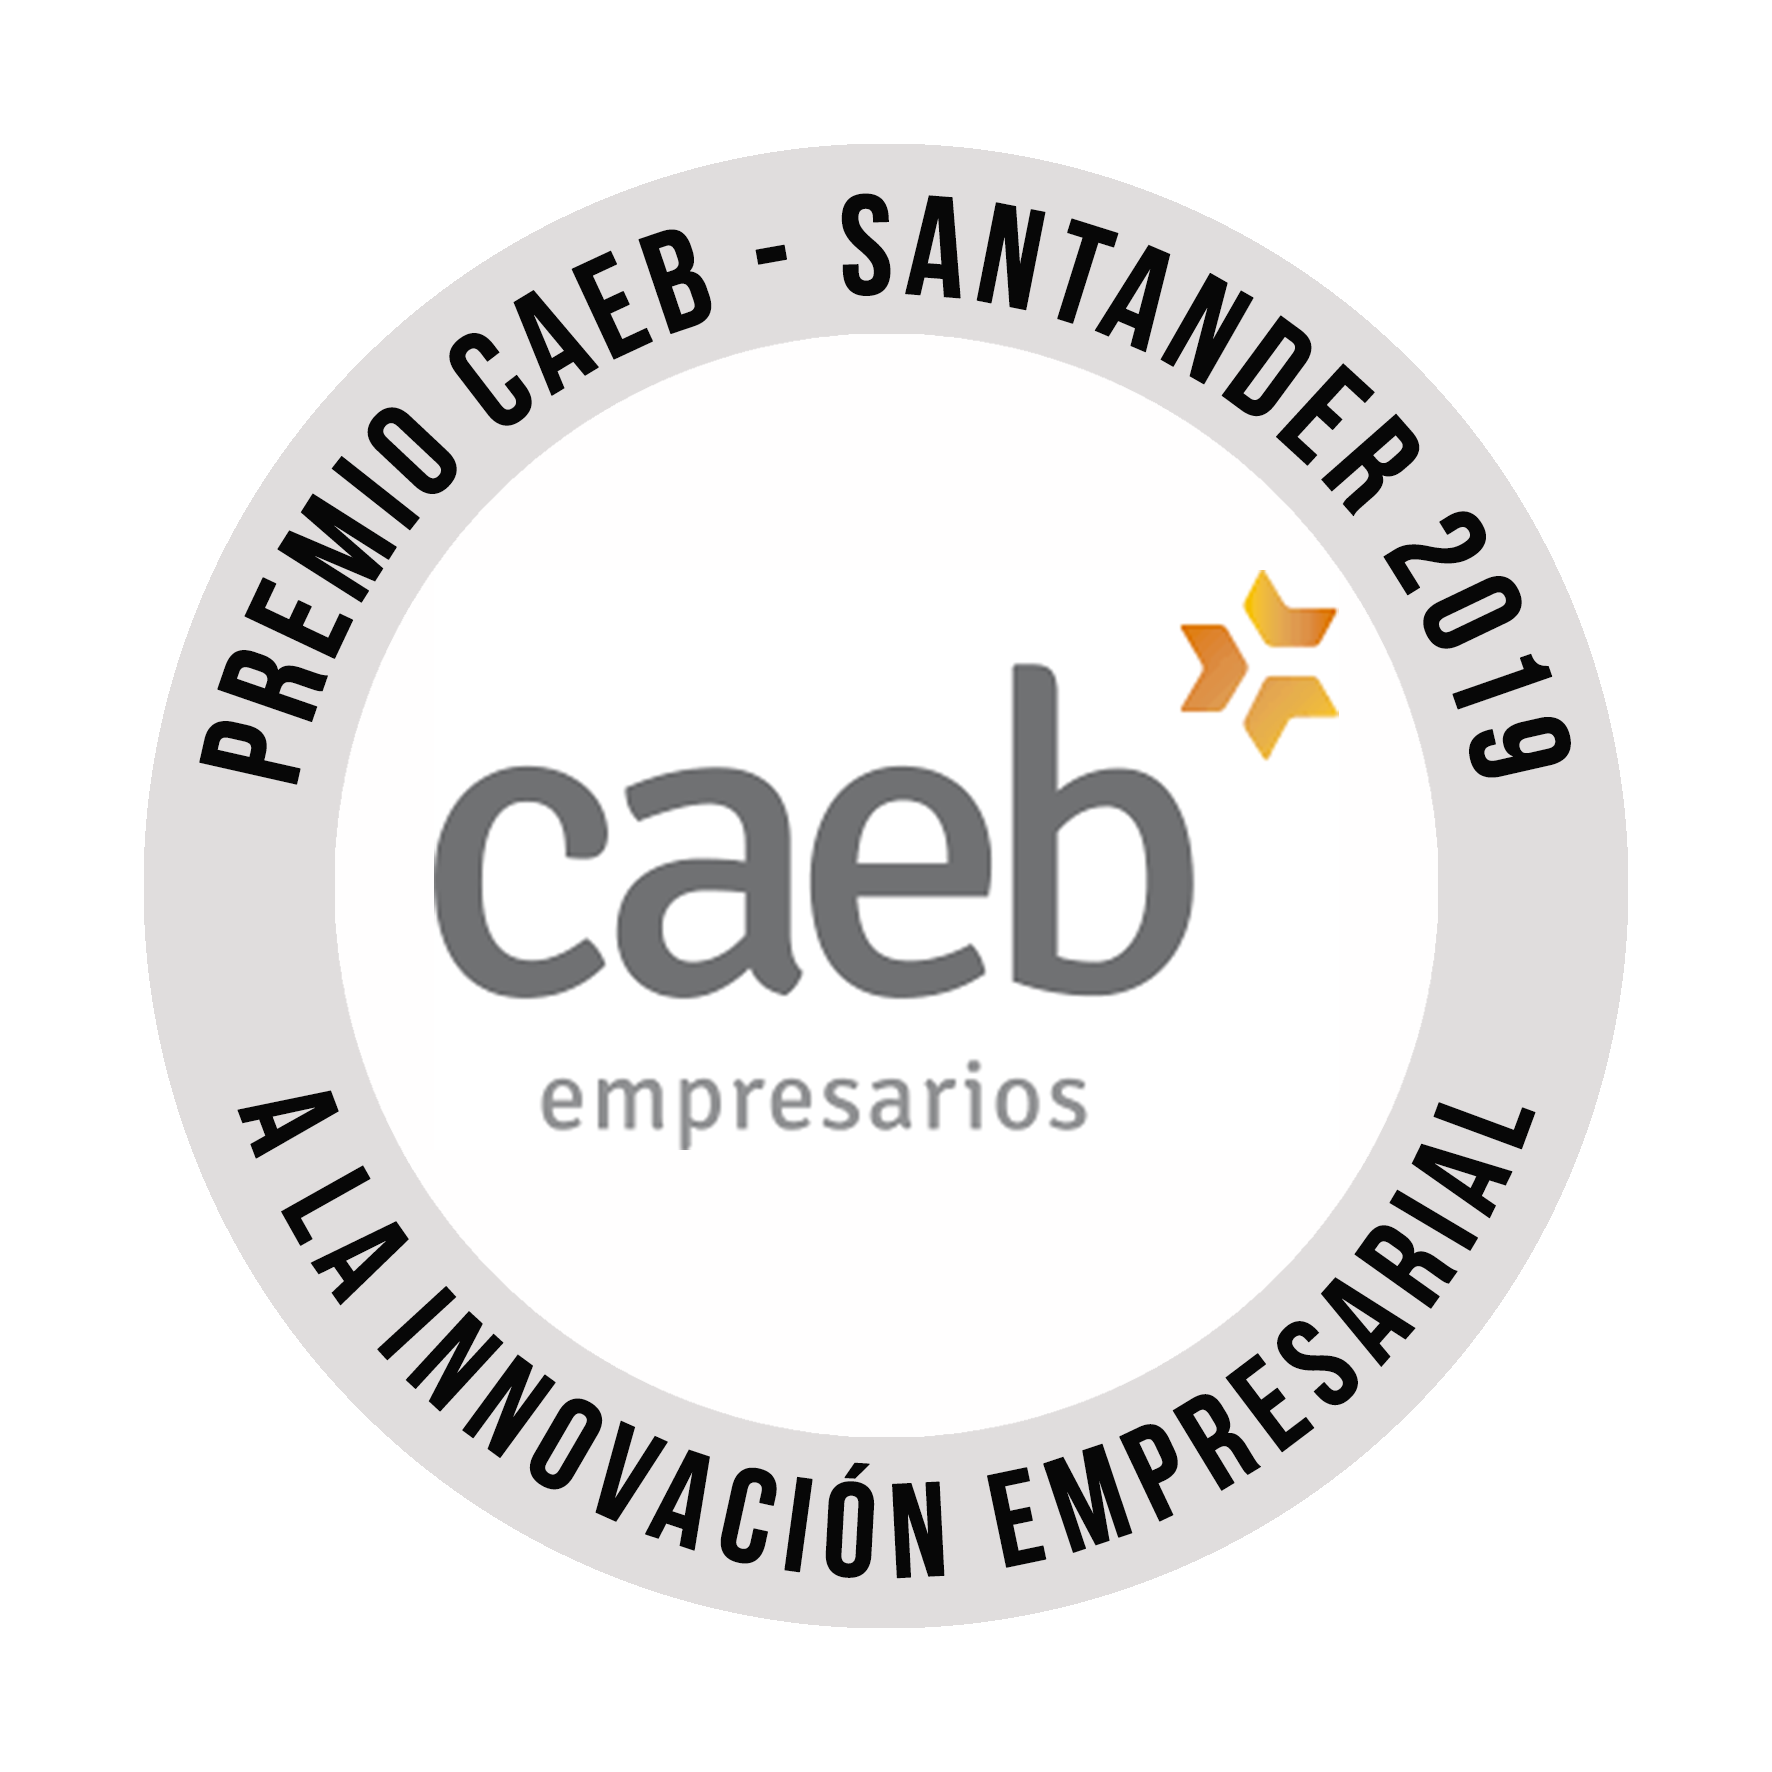 Ganadores del Premio CAEB-SANTANDER 2019 a la innovación empresarial